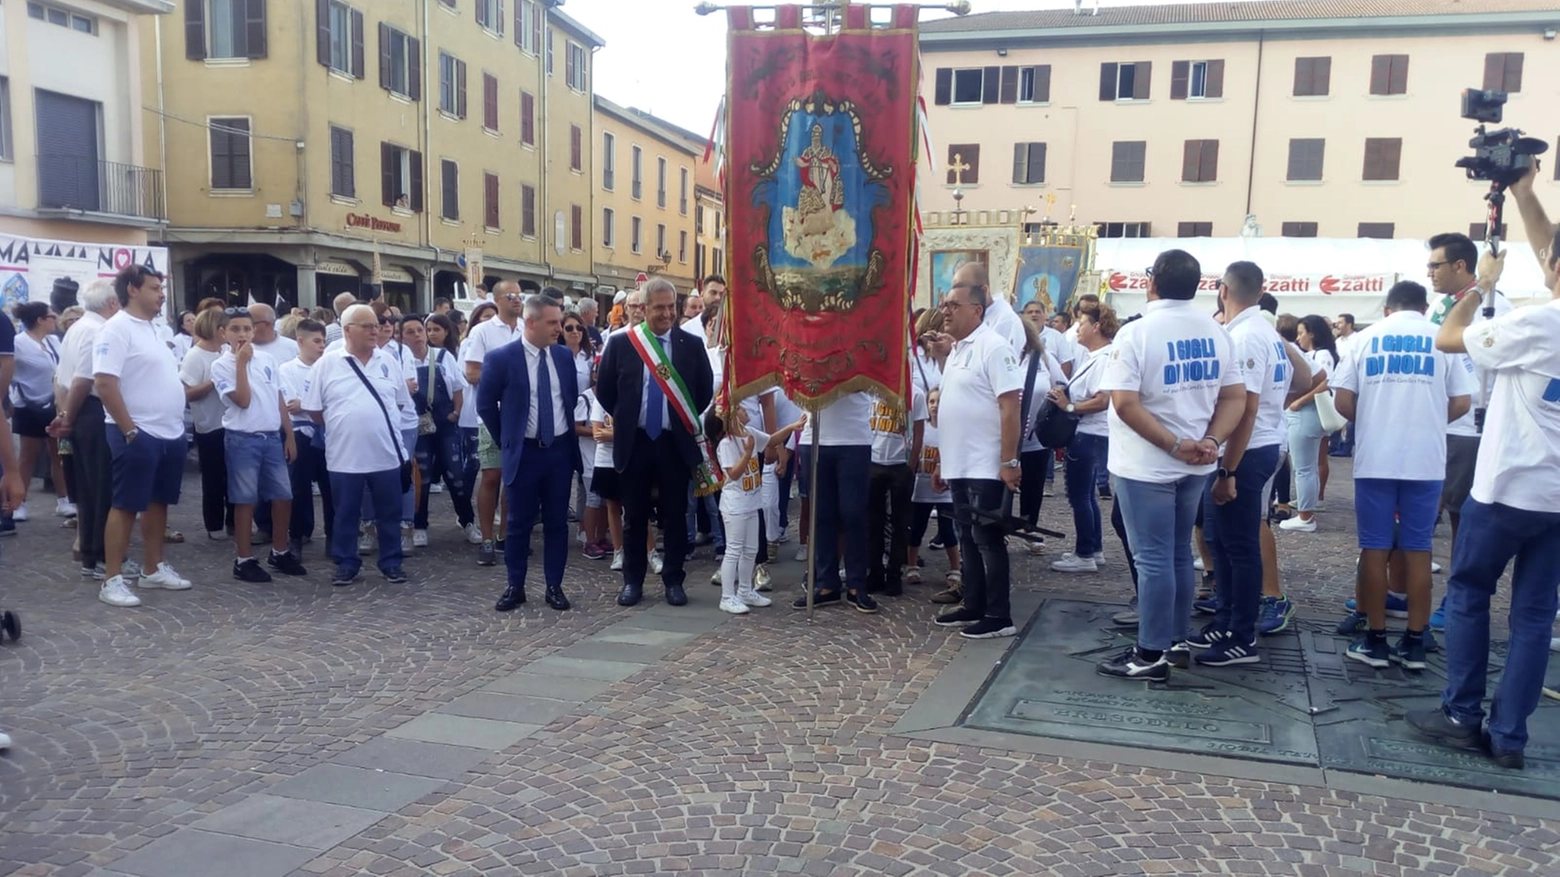 La cerimonia in piazza Matteotti